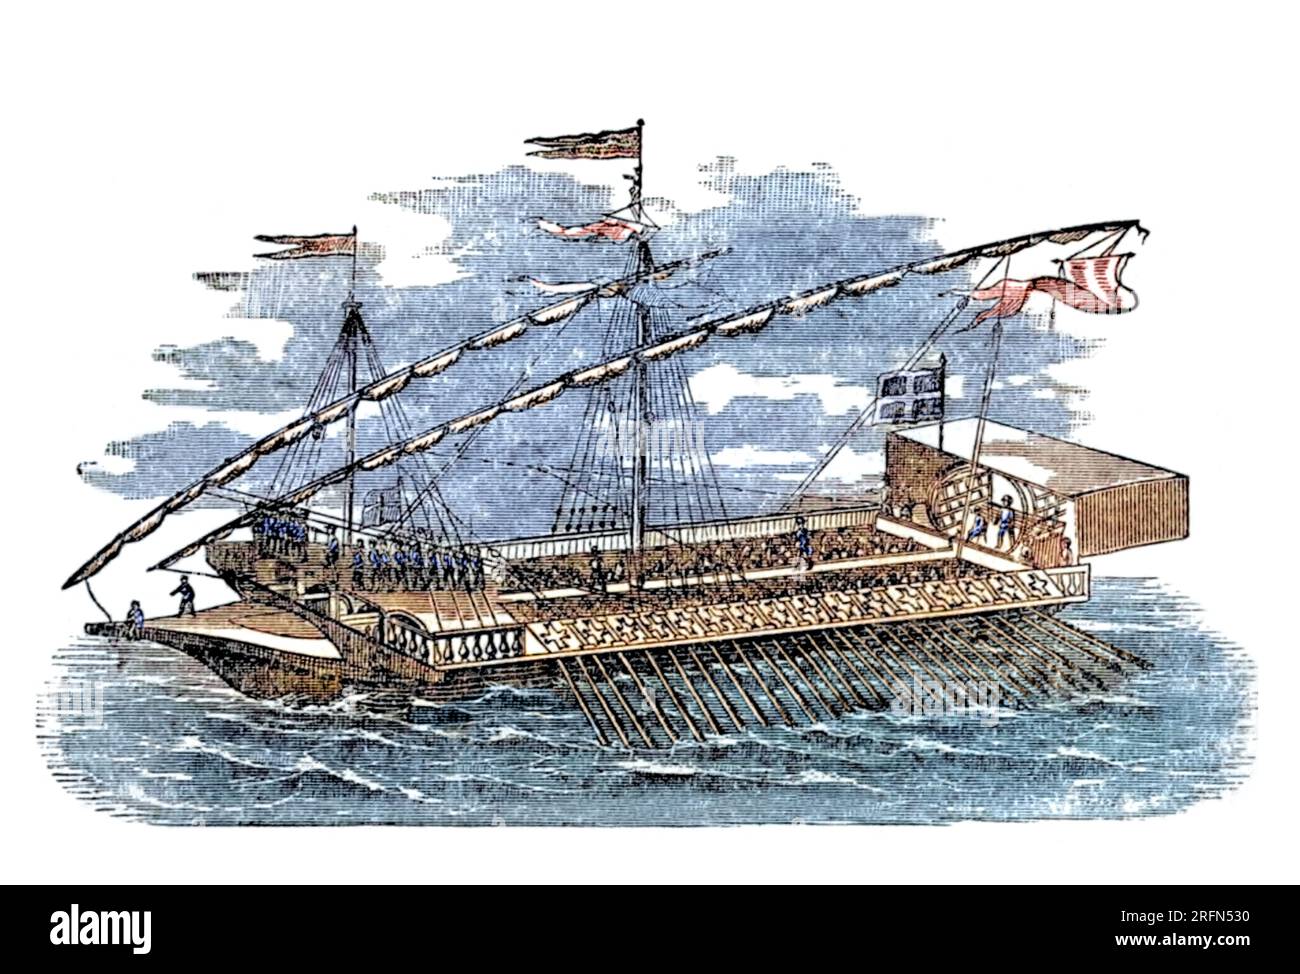 Eine Kombüse ist ein Ruderschiff. Sie entstand im späten zweiten Jahrtausend v. Chr. unter den Zivilisationen der mediterranen Seefahrt. Stockfoto